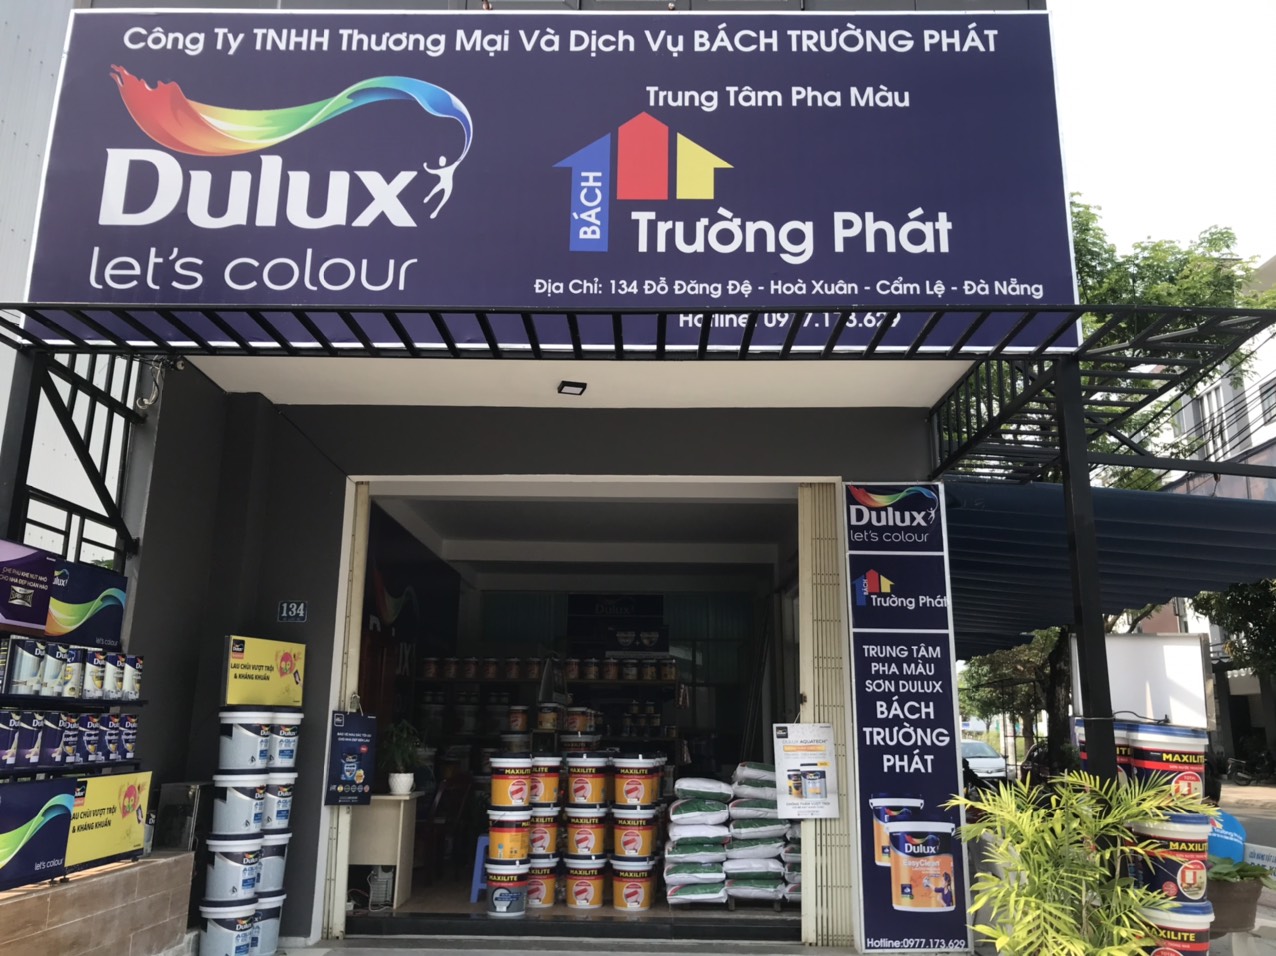 Đại lý sơn Dulux tại Đà Nẵng sắp sửa mở cửa để phục vụ người tiêu dùng tại đây, với chất lượng và giá cả tốt nhất. Nhấn vào hình ảnh để cảm nhận sự thật và sự hài lòng từ khách hàng khác, và hãy đến với đại lý chính hãng để sở hữu sản phẩm chất lượng nhất.